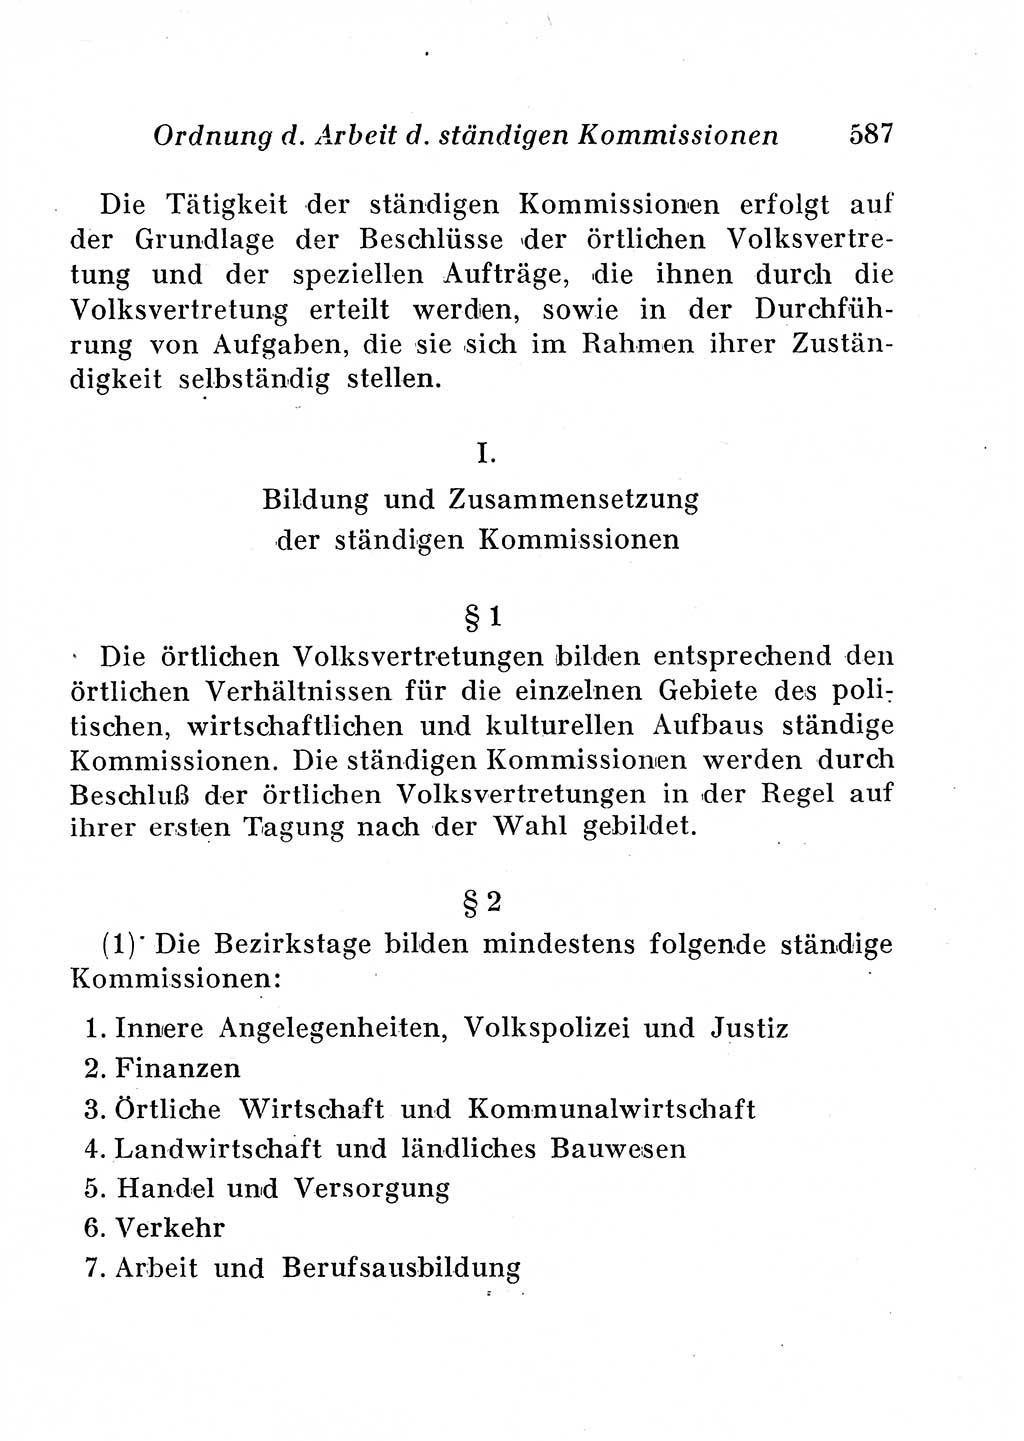 Staats- und verwaltungsrechtliche Gesetze der Deutschen Demokratischen Republik (DDR) 1958, Seite 587 (StVerwR Ges. DDR 1958, S. 587)